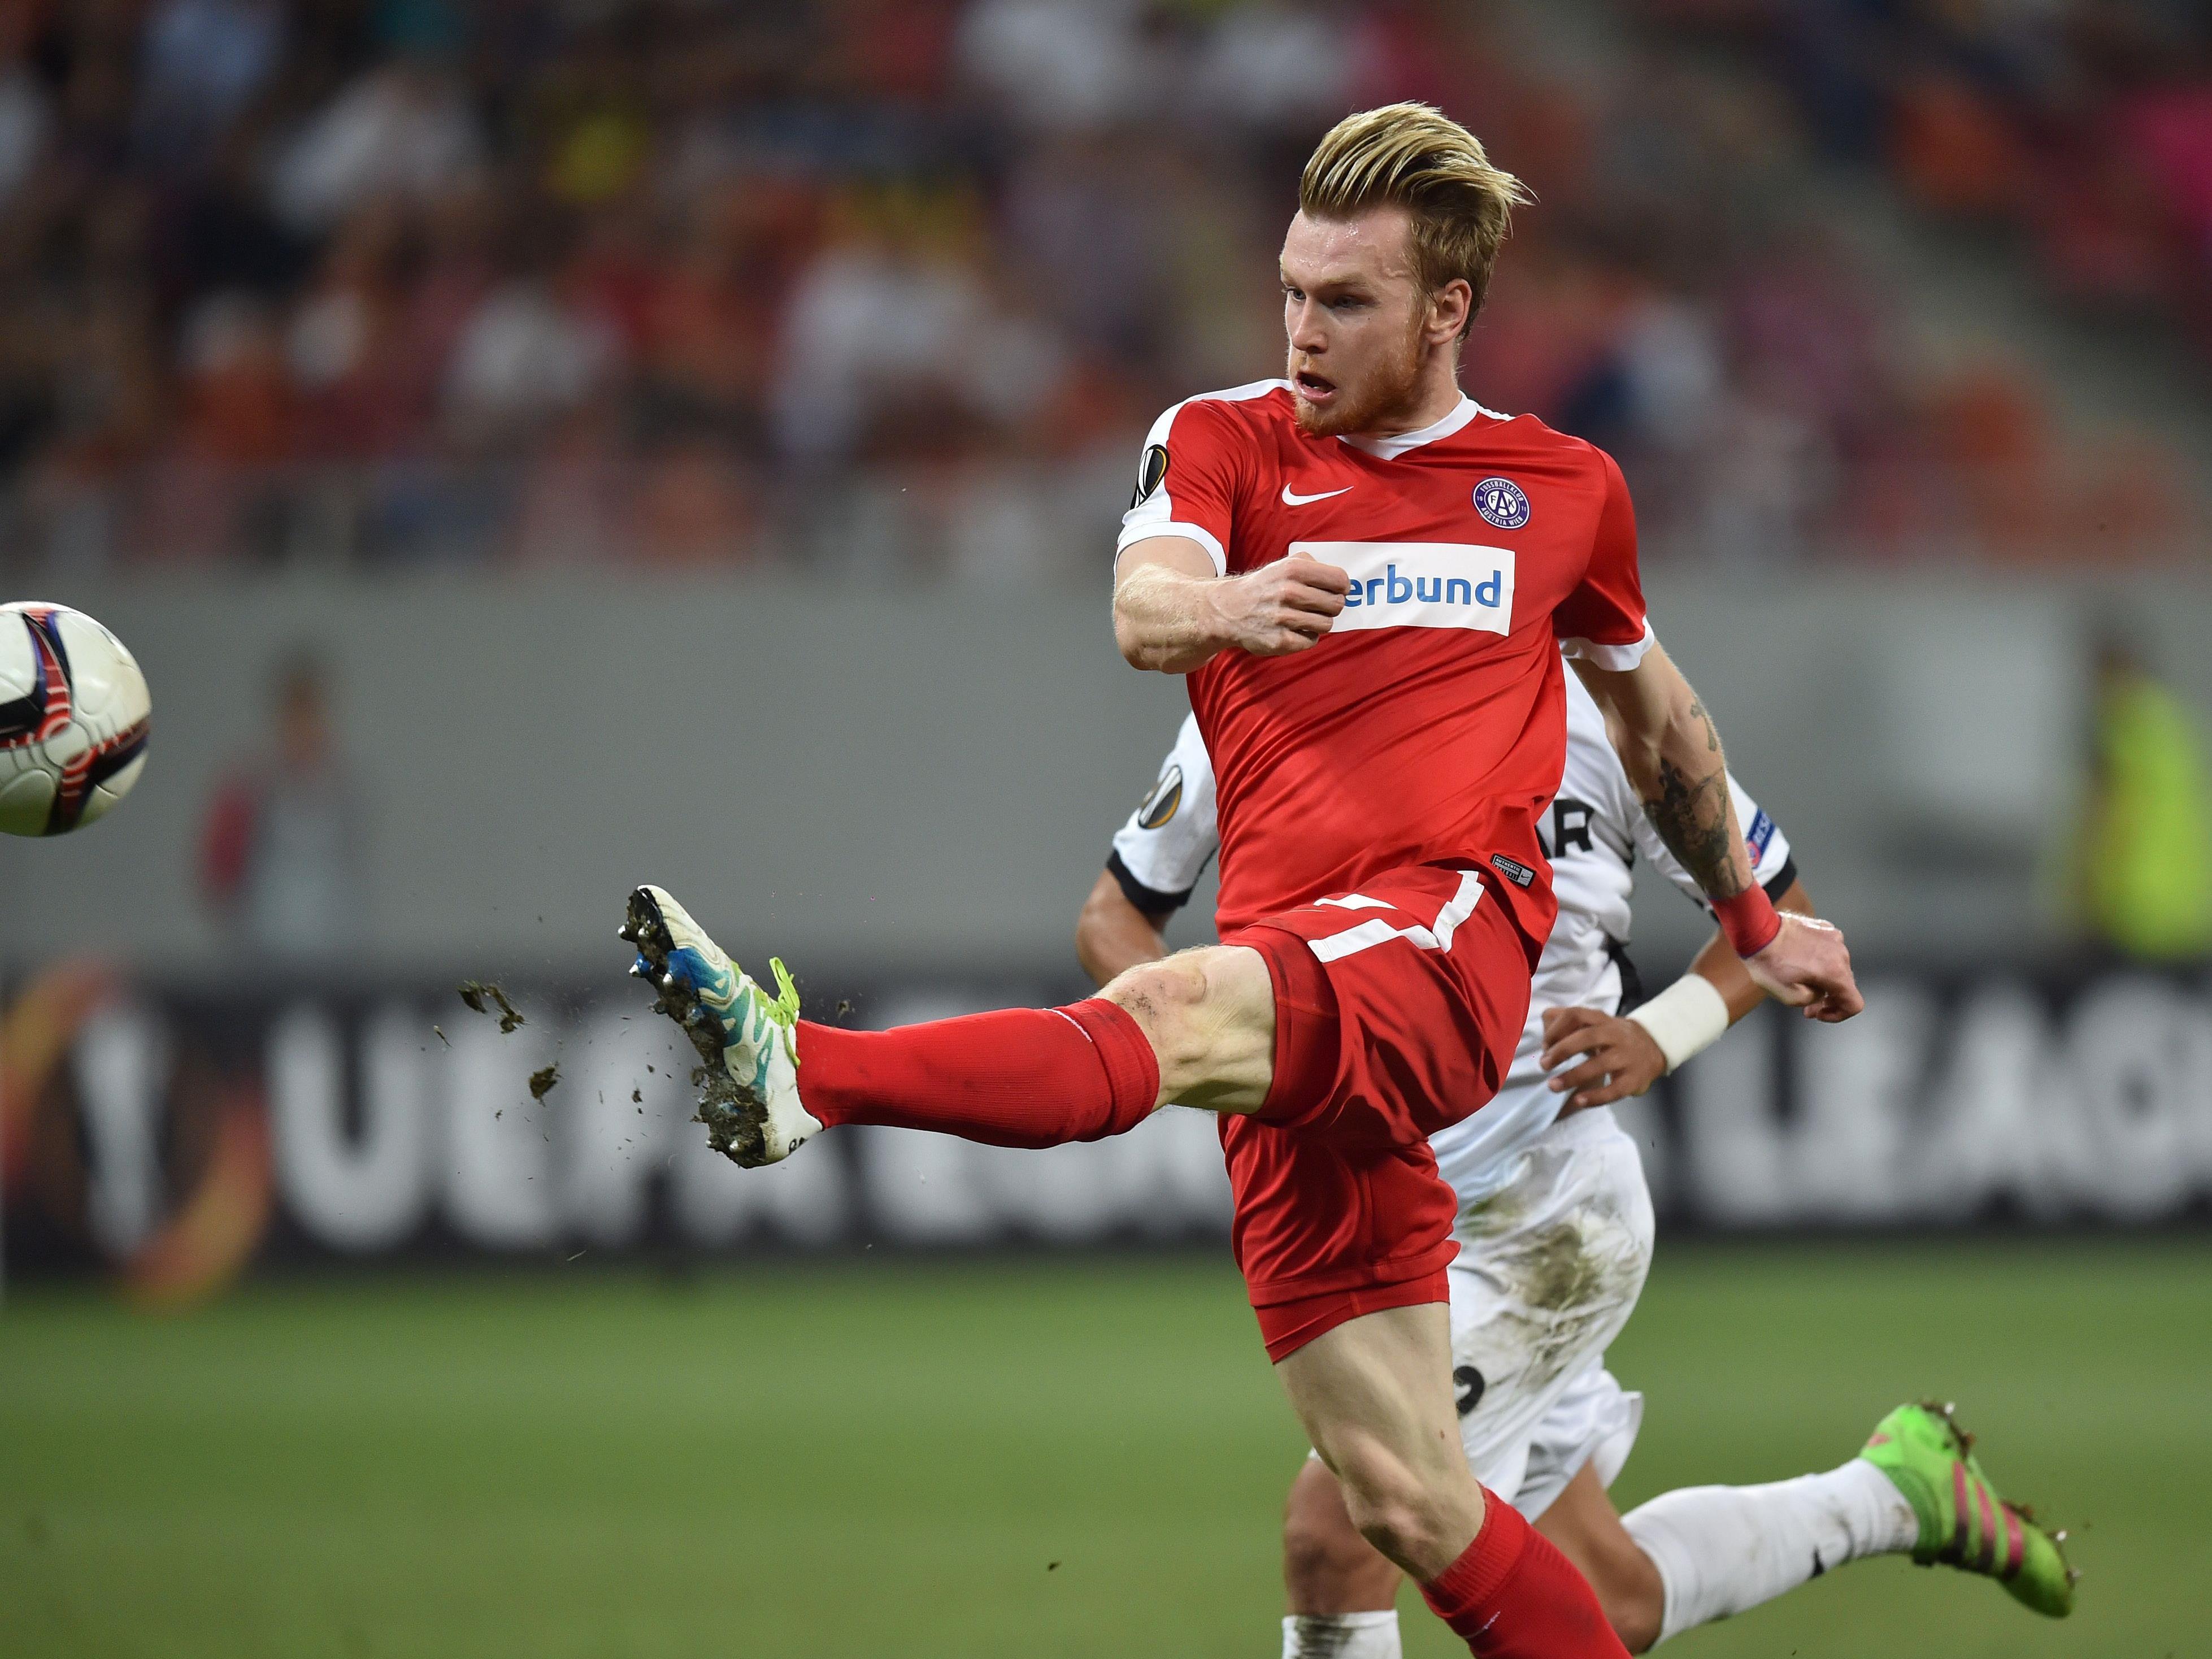 Kevin Friesenbichlers Treffer für Austria Wien auswärts bei Astra Giurgiu steht zur Wahl zum "Tor der Saison" der UEFA.